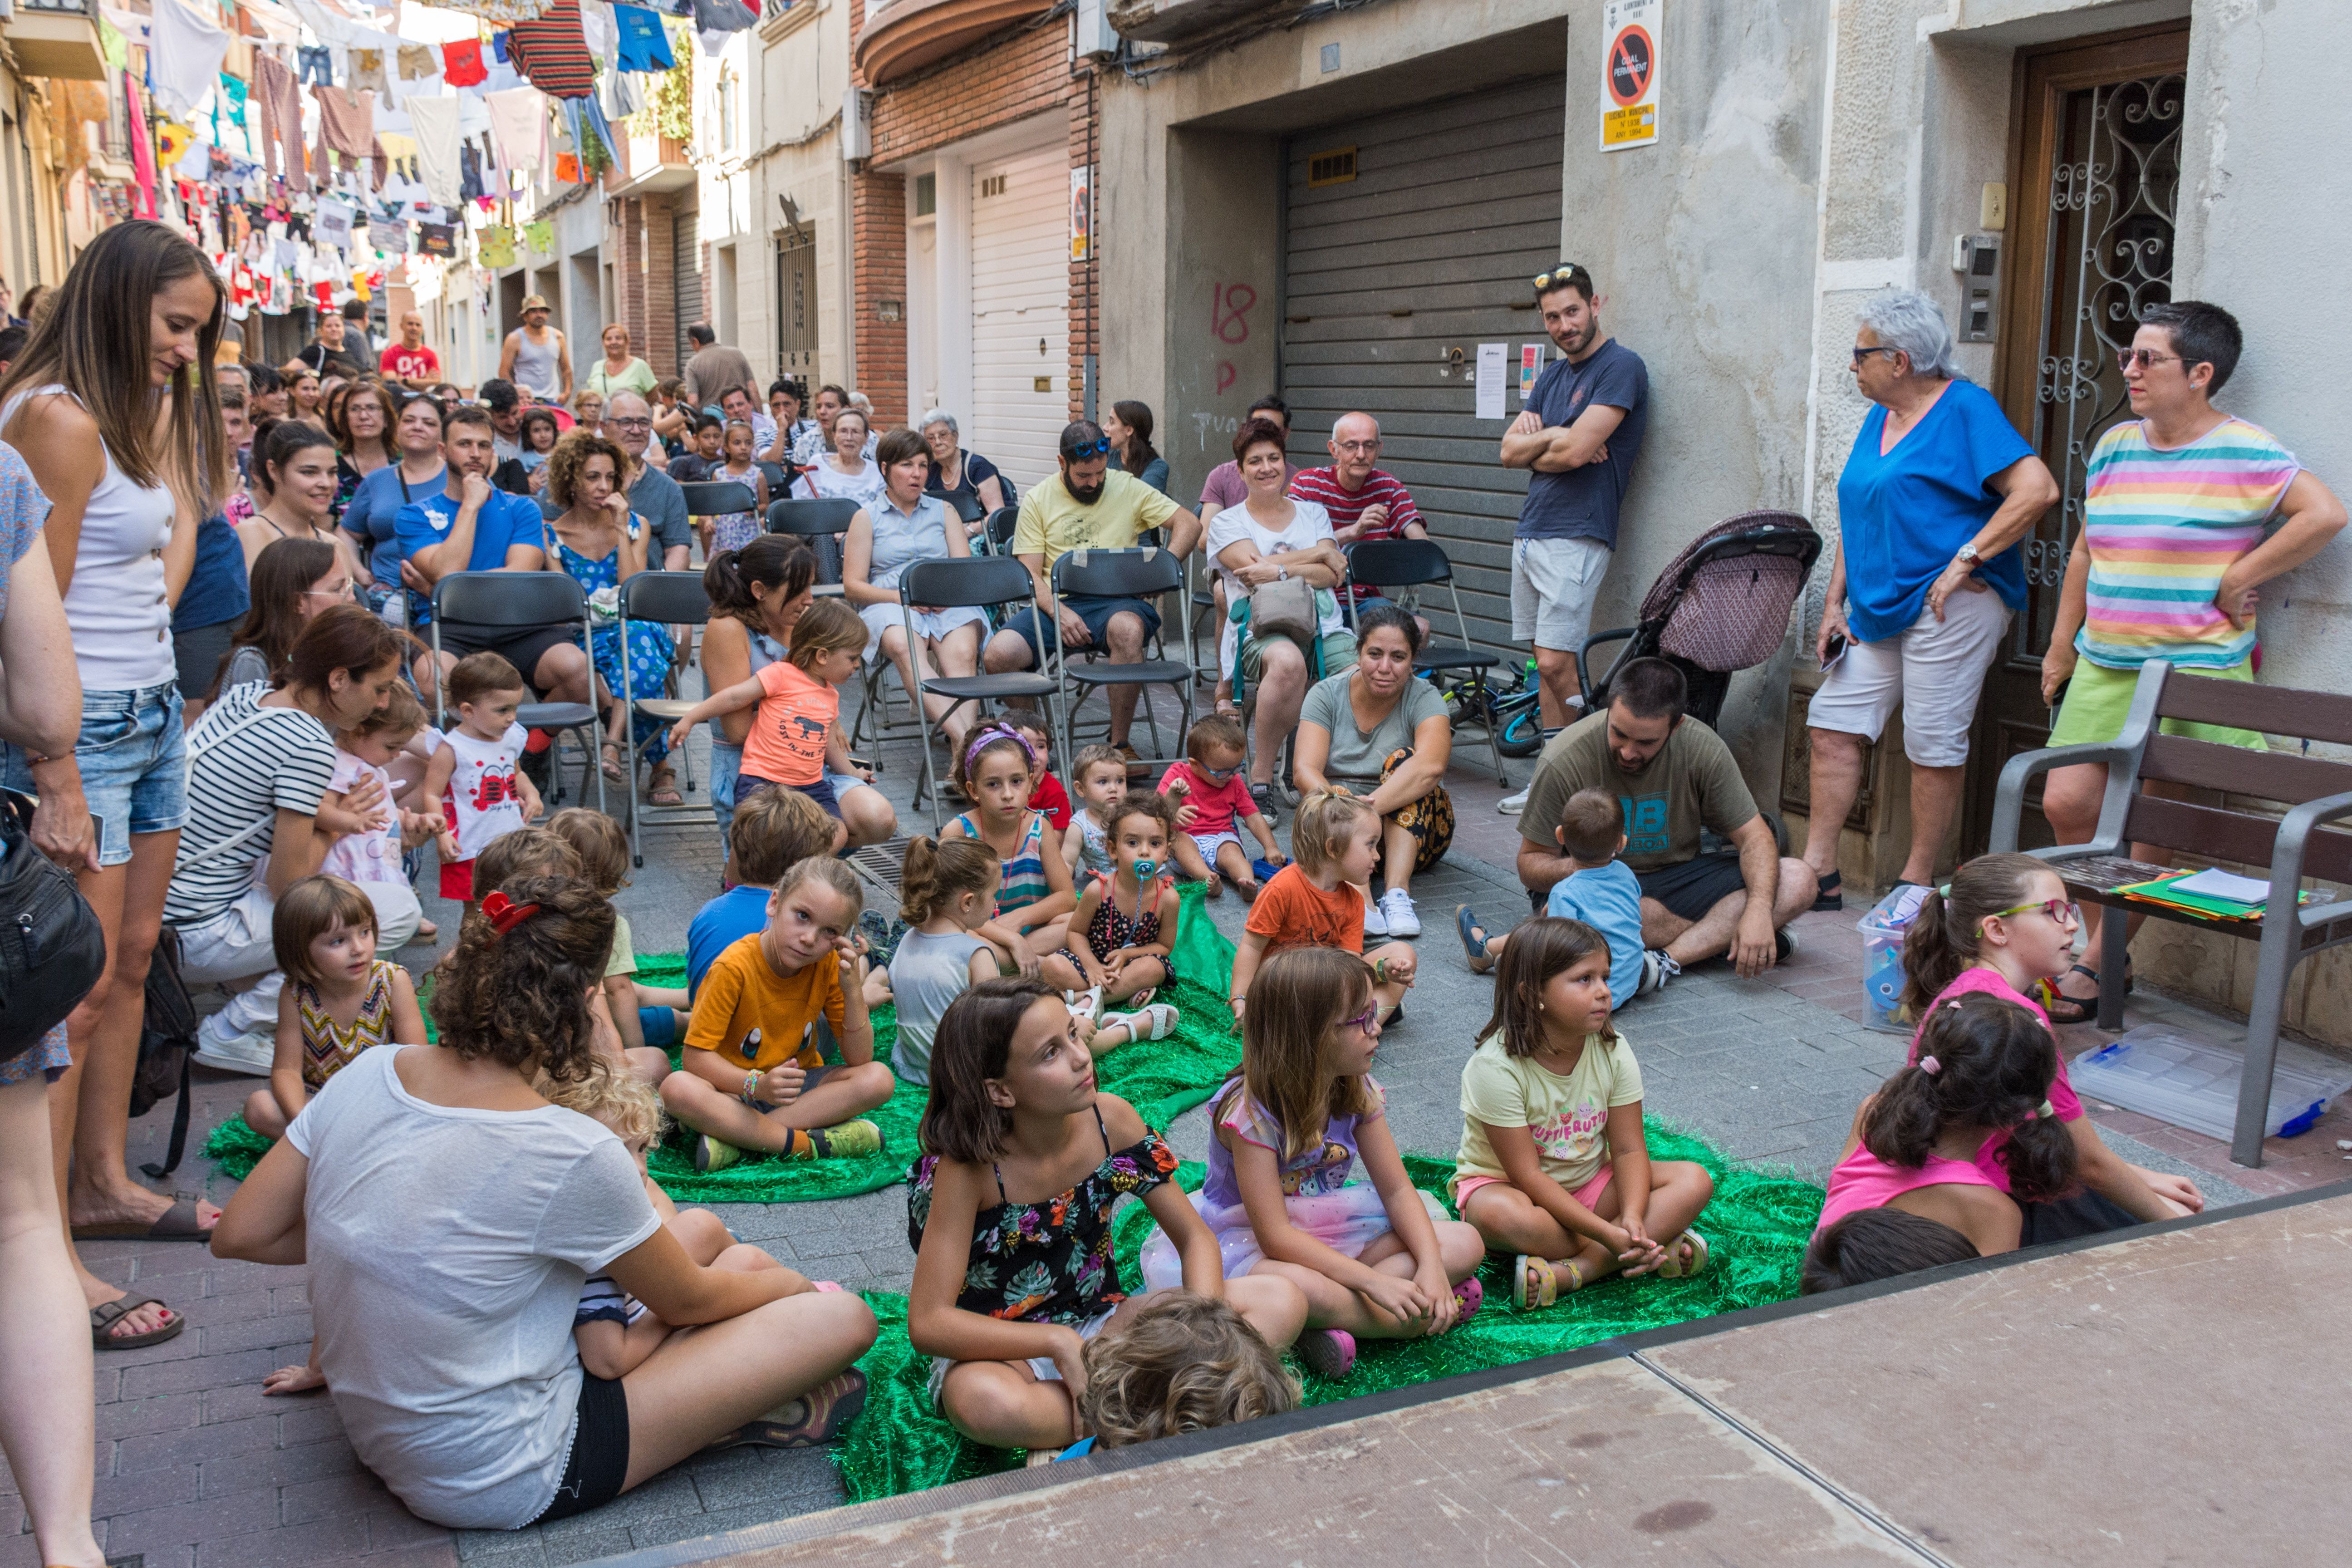 El carrer Sant Jaume celebra la seva tradicional festa. Foto: Carmelo Jiménez